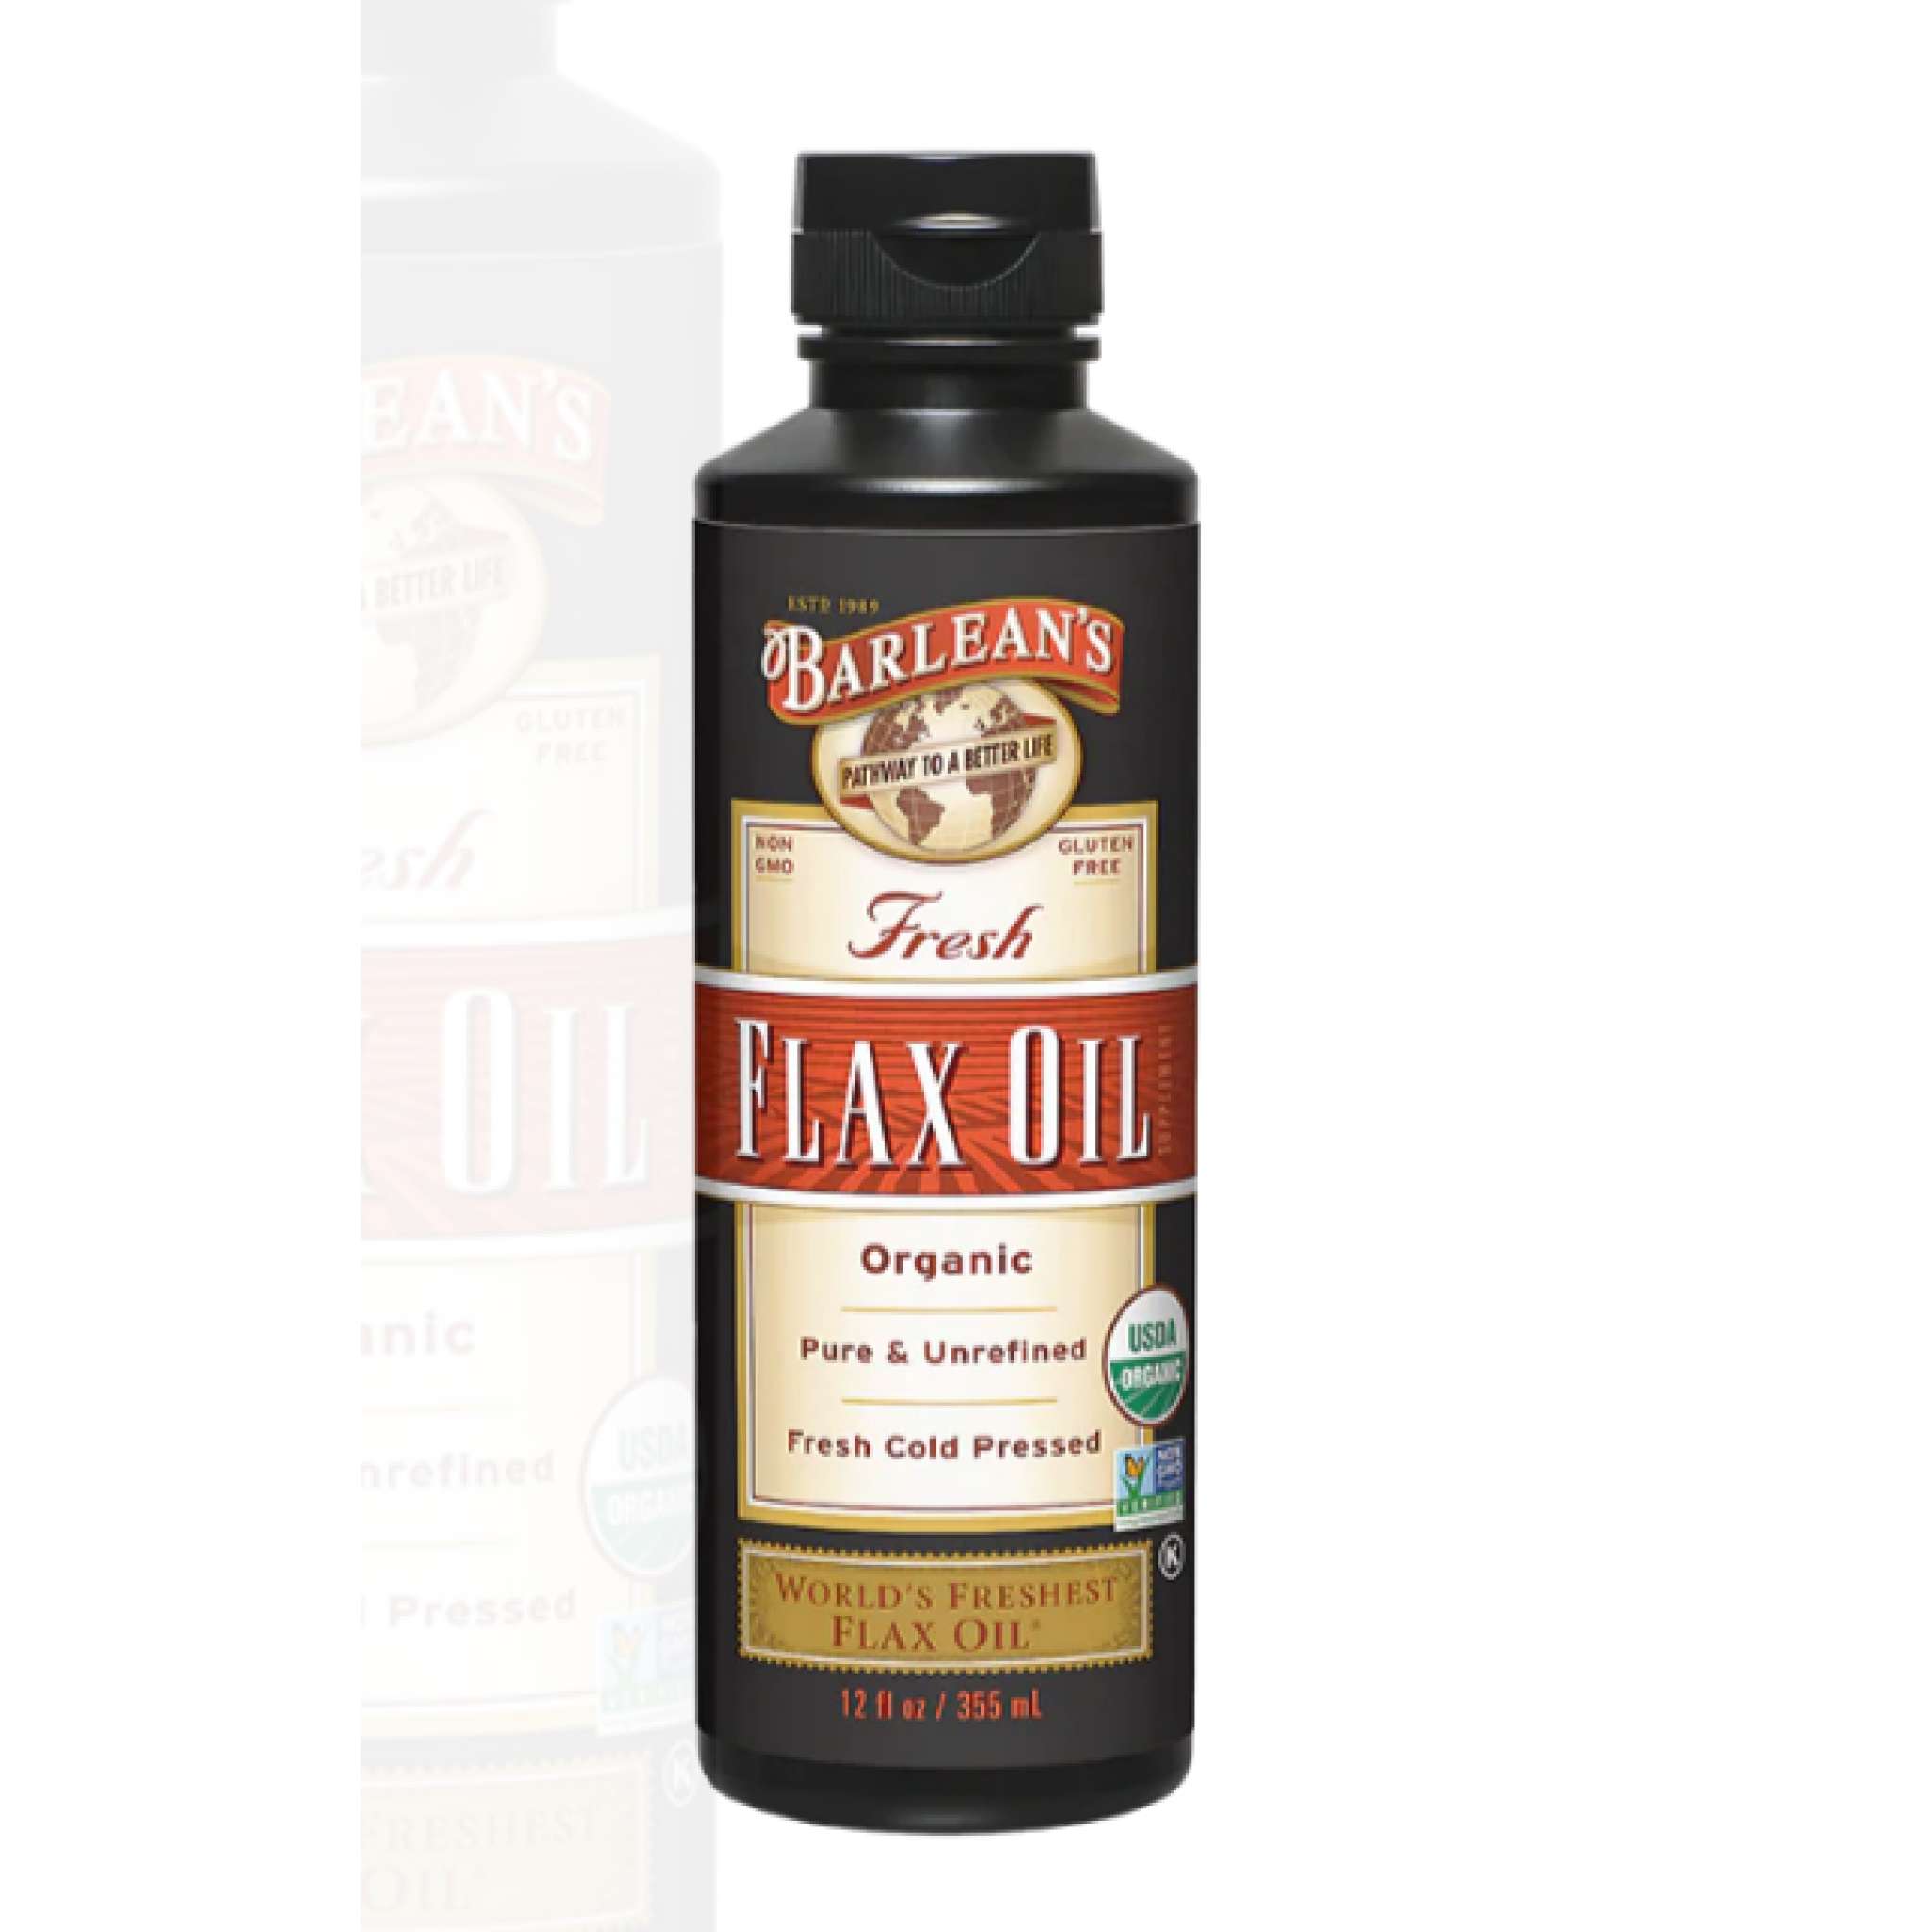 Barleans - Flax Oil